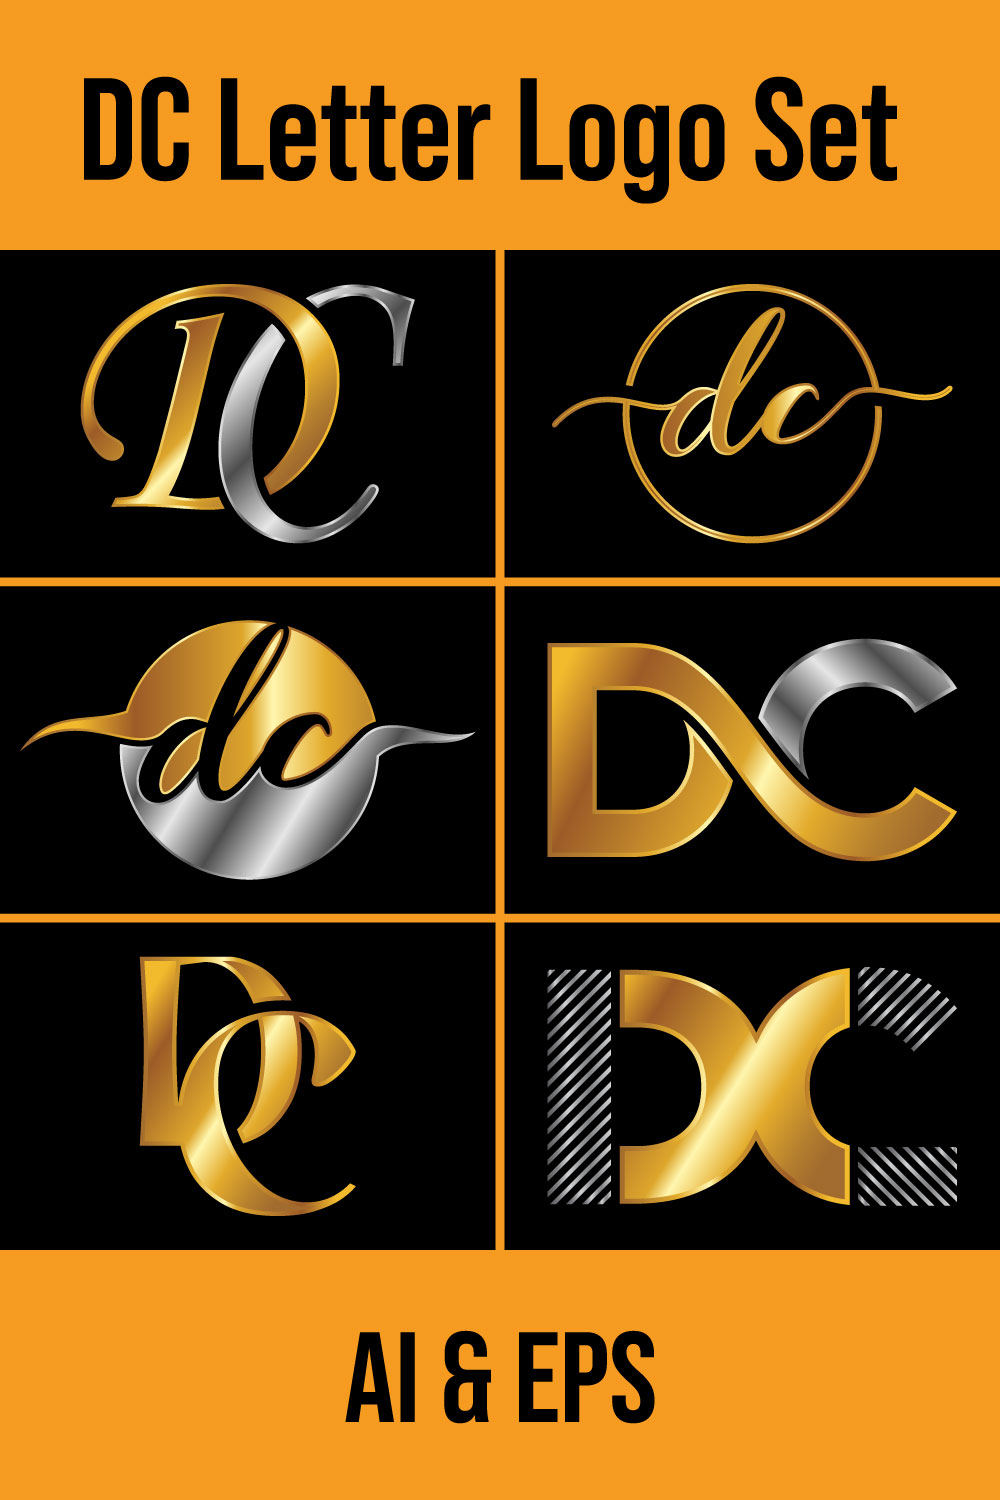 Logo Design Master Collection - TheVectorLab